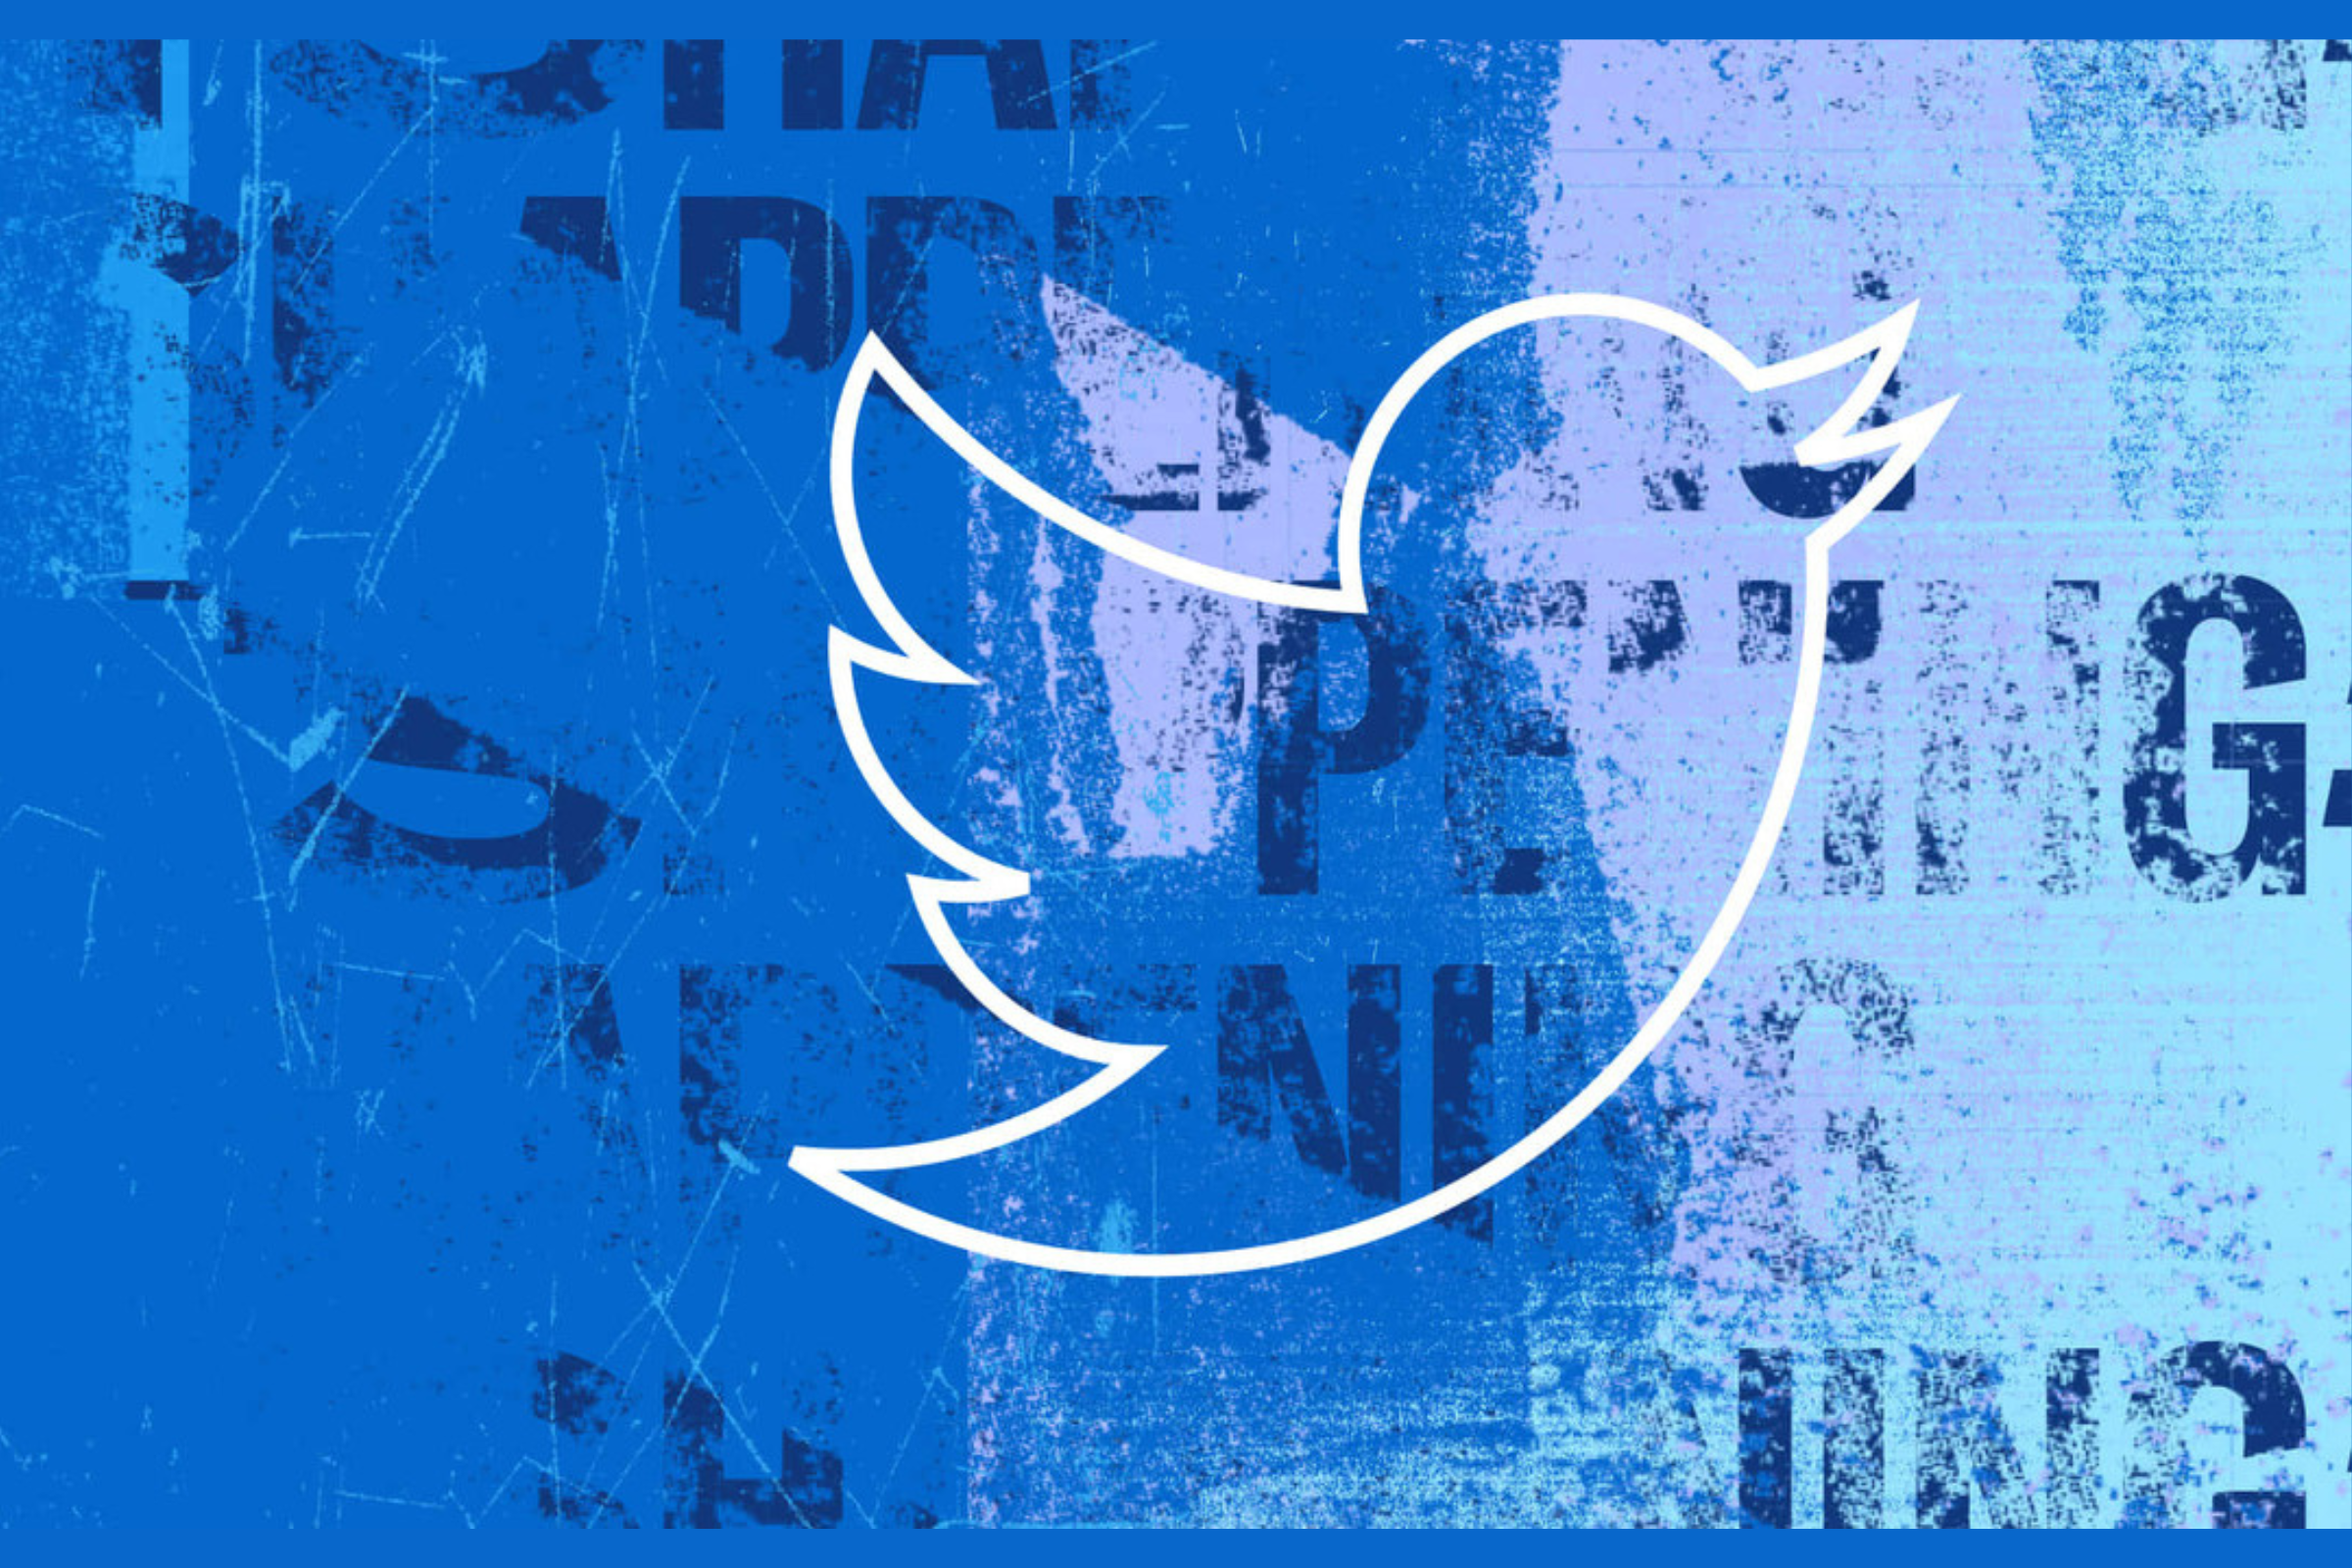 Twitter Logo 